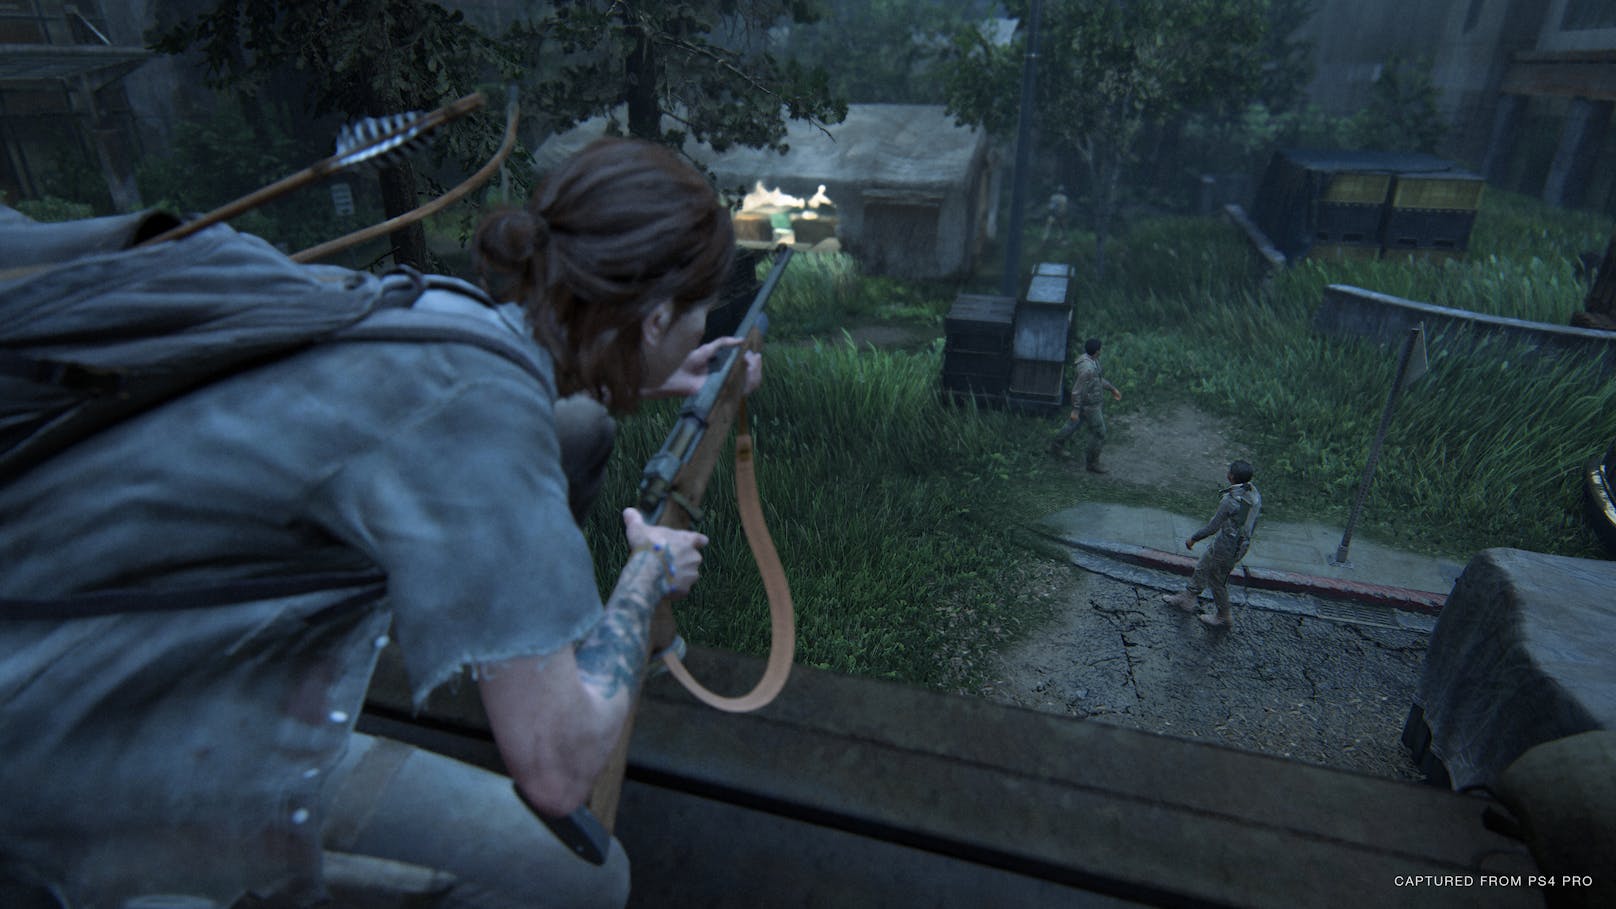 Entwickler Naughty Dog hat sich schon mit der "Uncharted"-Serie und dem ersten Teil von "The Last of Us" Denkmäler gesetzt. Die alle könnte aber "The Last of Us Part II" verblassen lassen und zum Jahrhunderttitel für die PlayStation 4 werden.